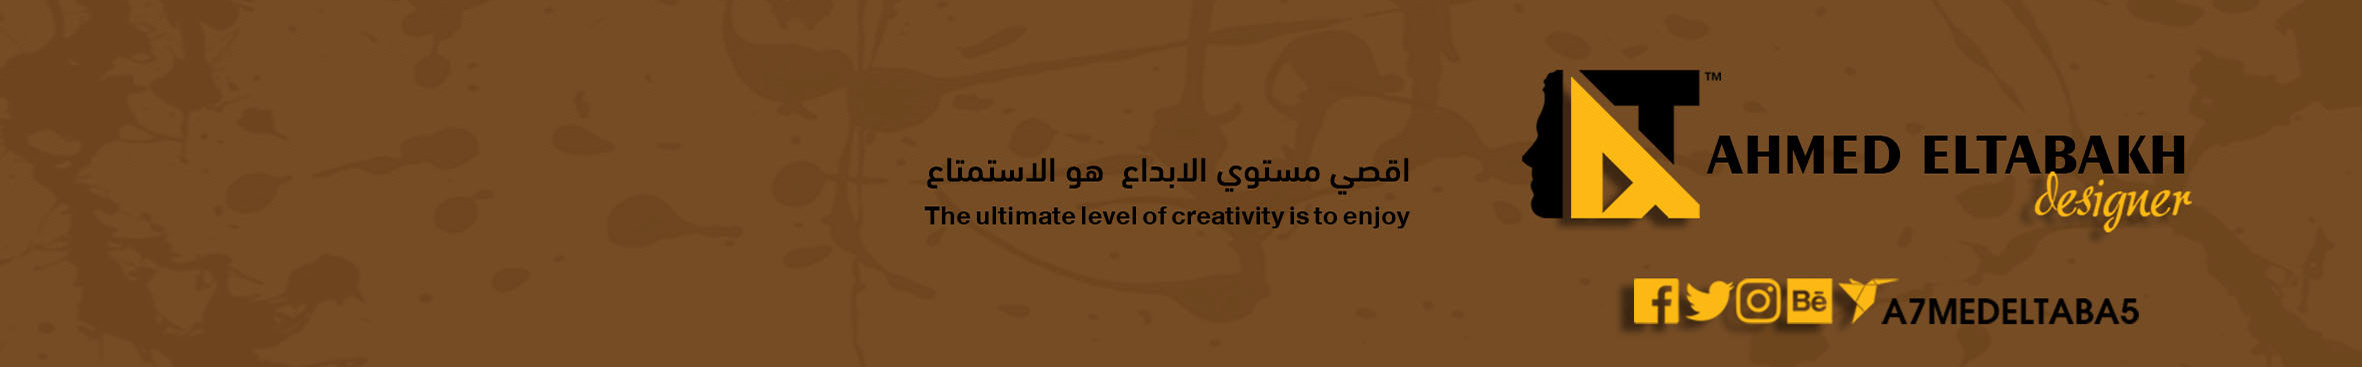 Ahmed Eltabakh's profile banner